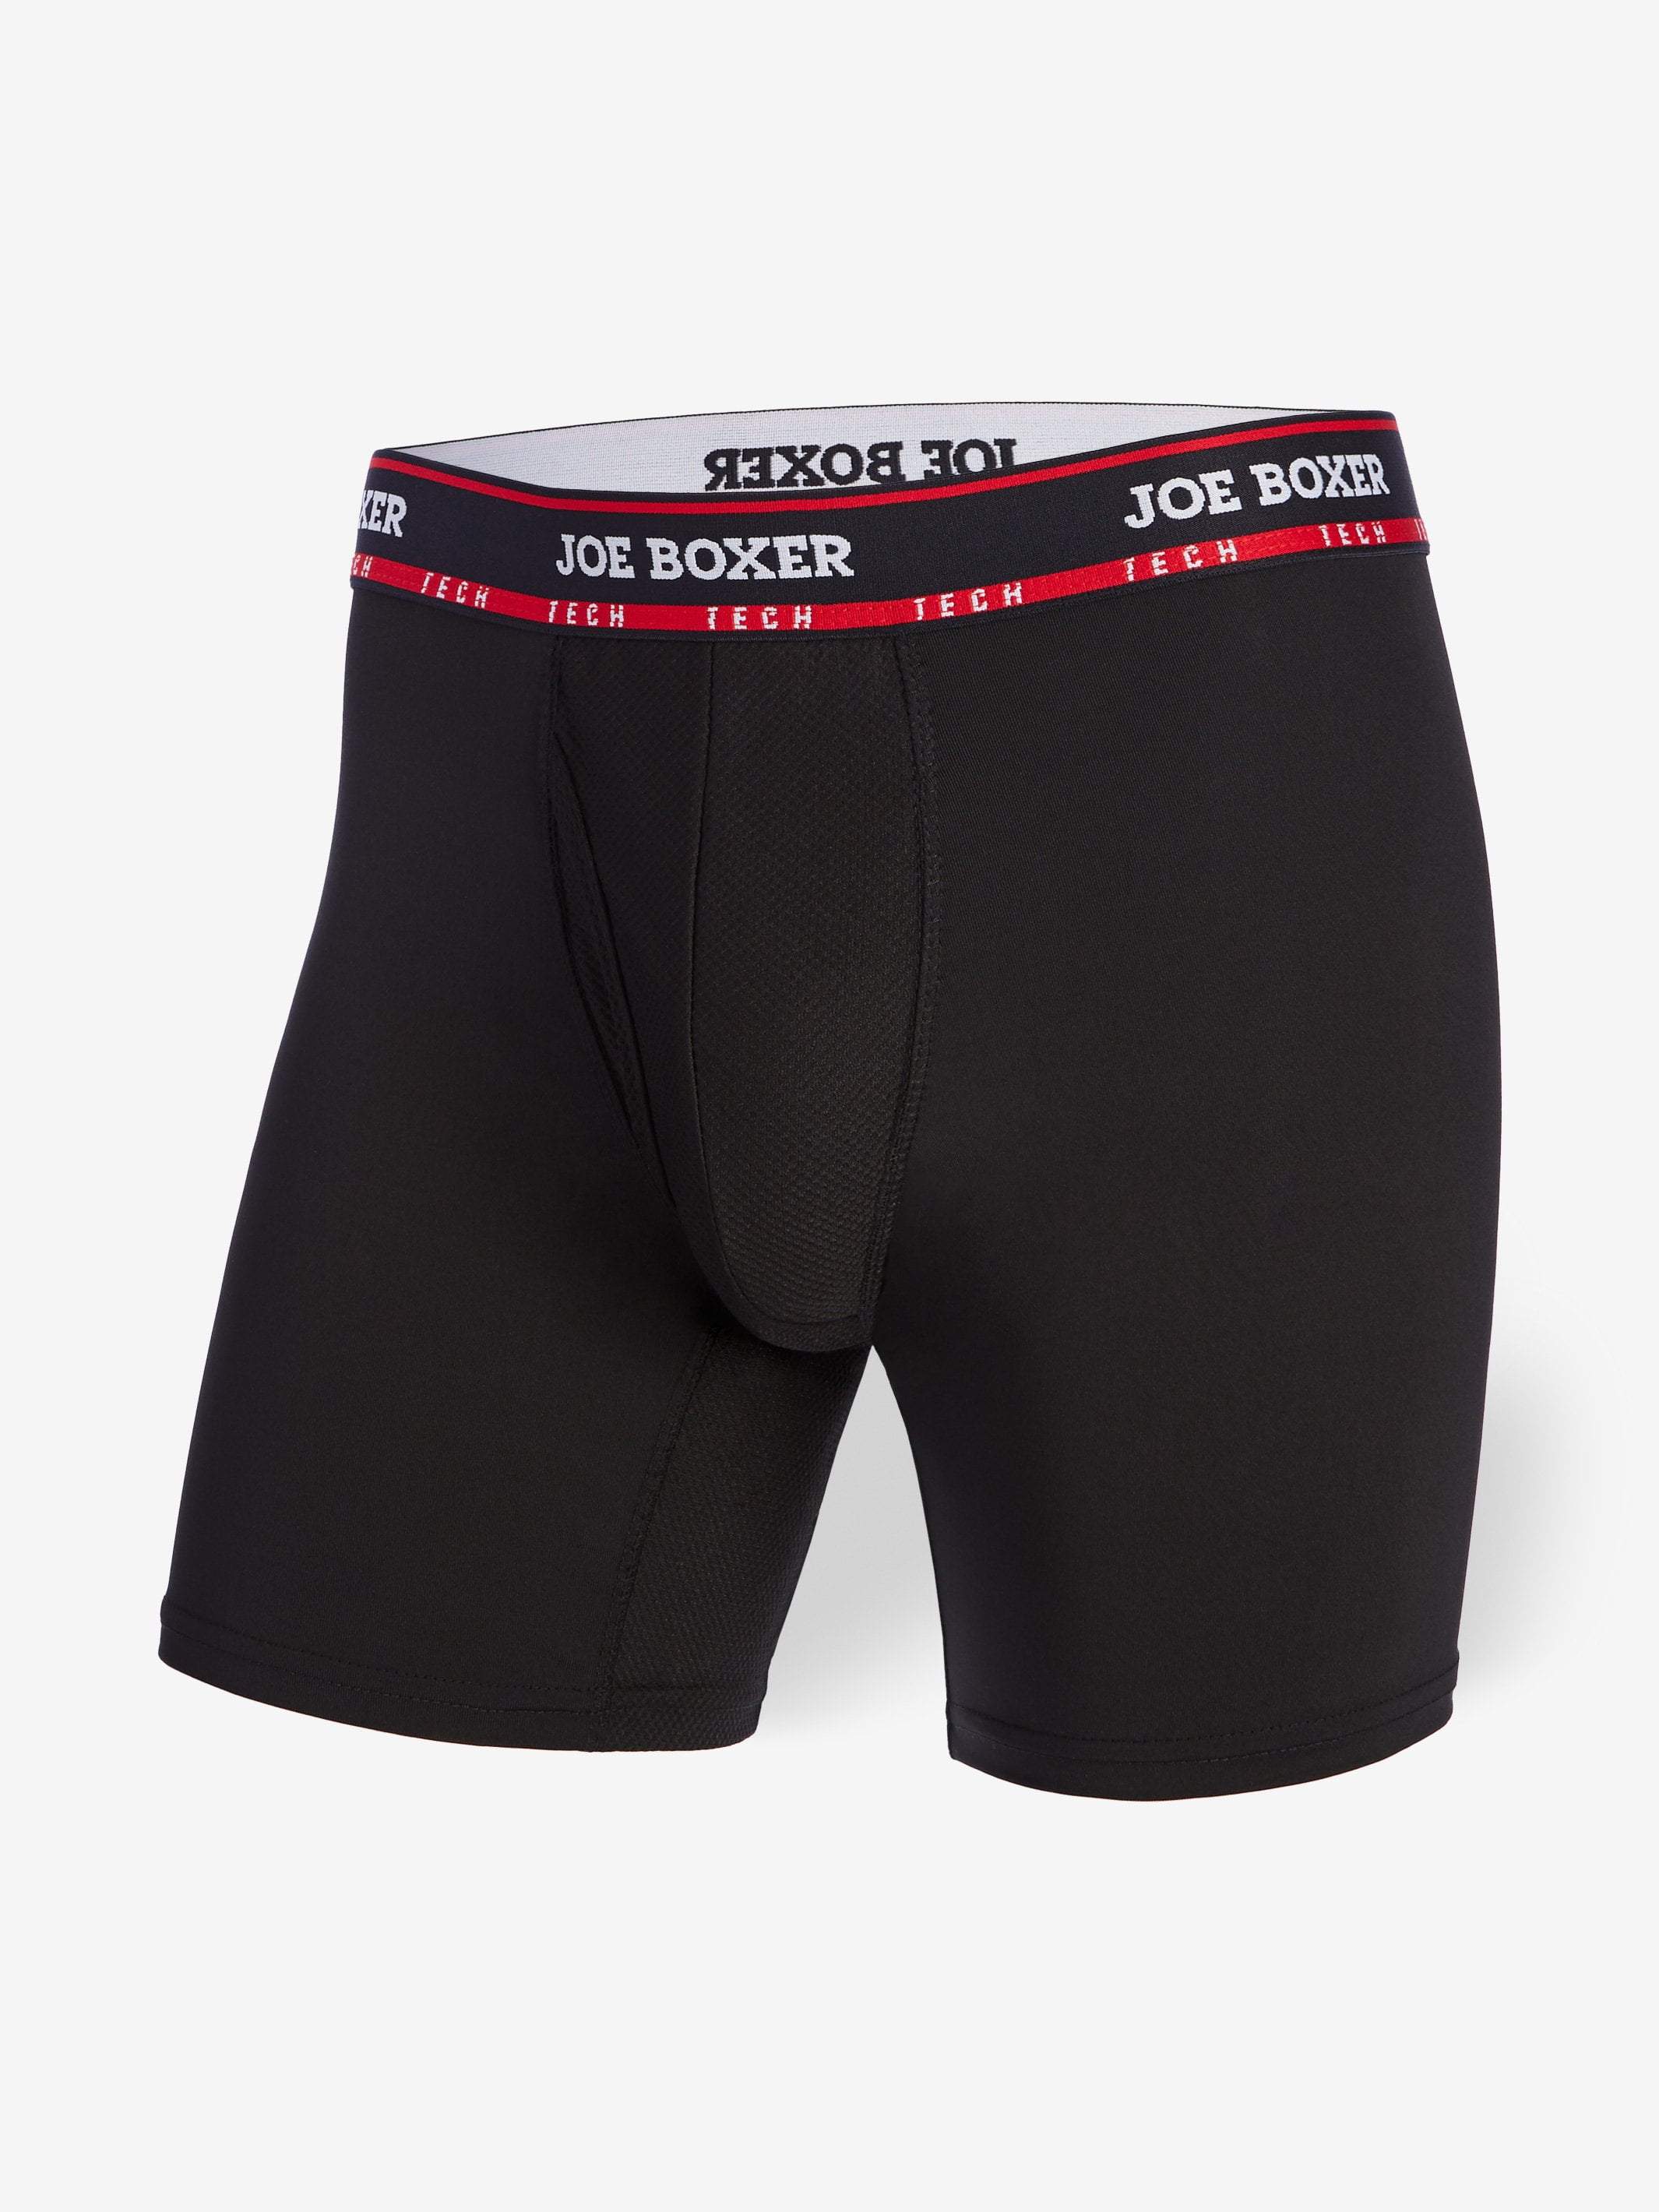 Athletic Works Men's Boxer Briefs Underwear, 3 Pack 